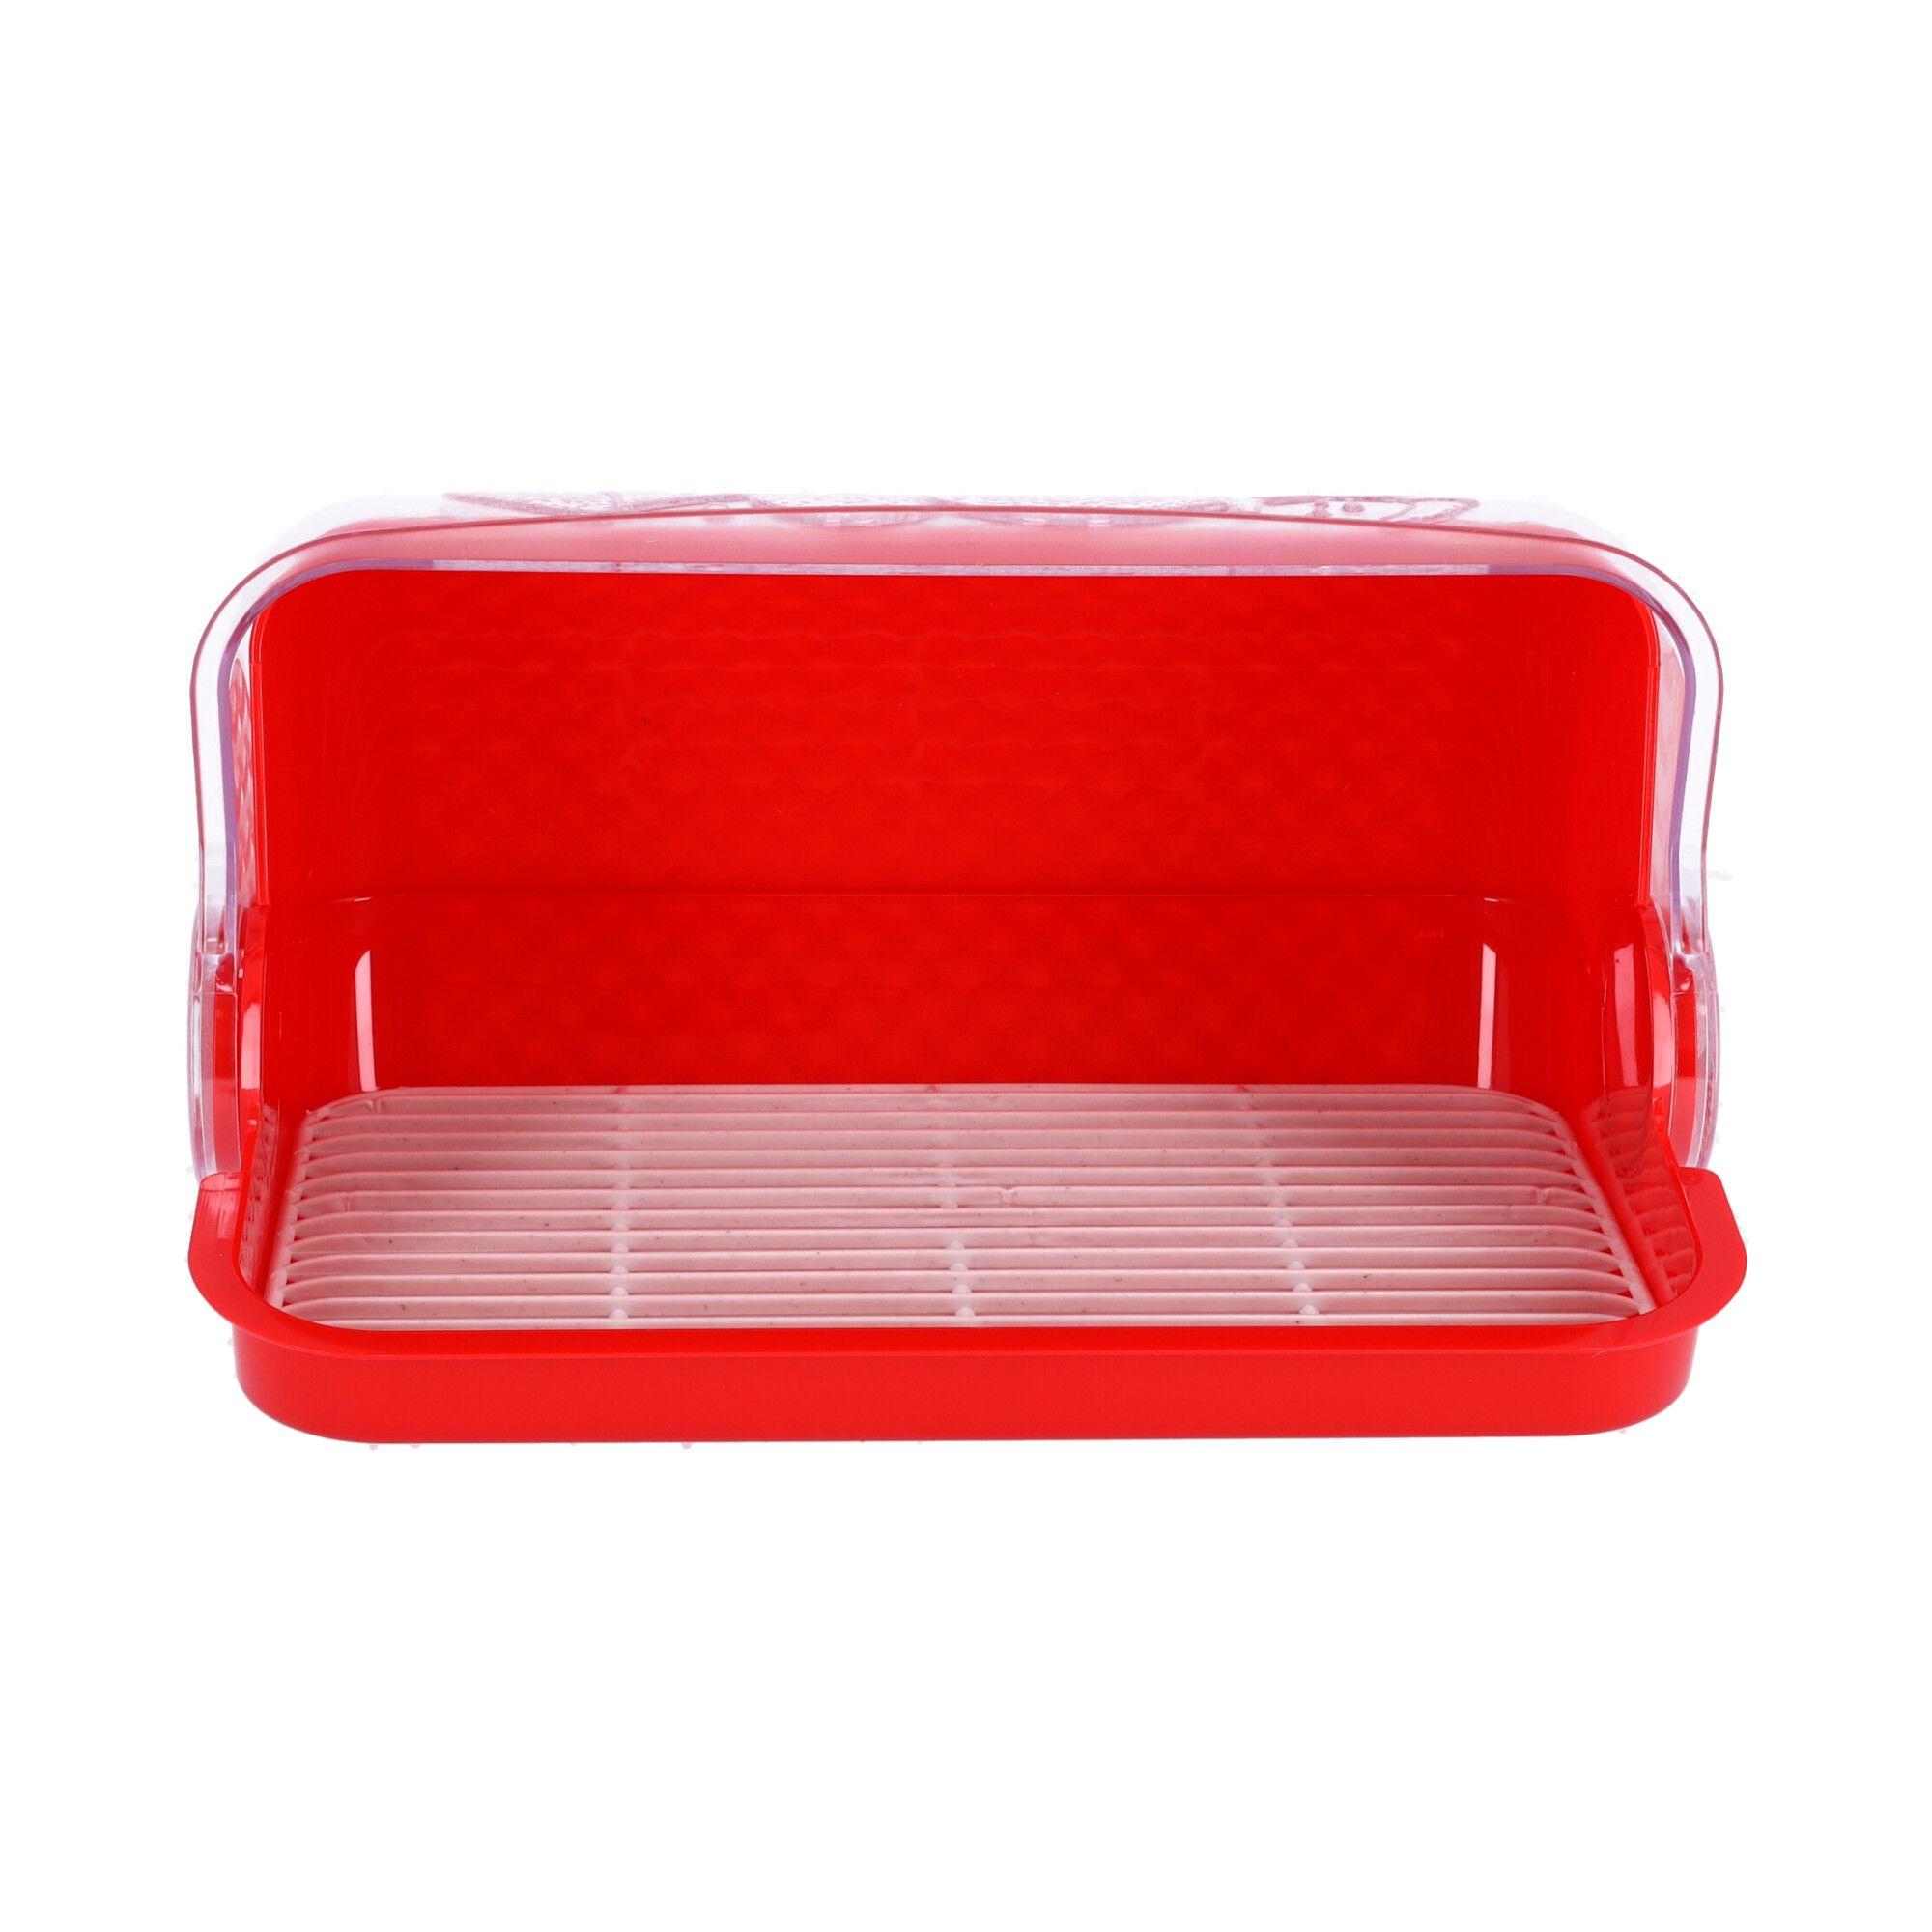 Plastic bread box, bread container, size 42x27x18 cm, POLISH PRODUCT